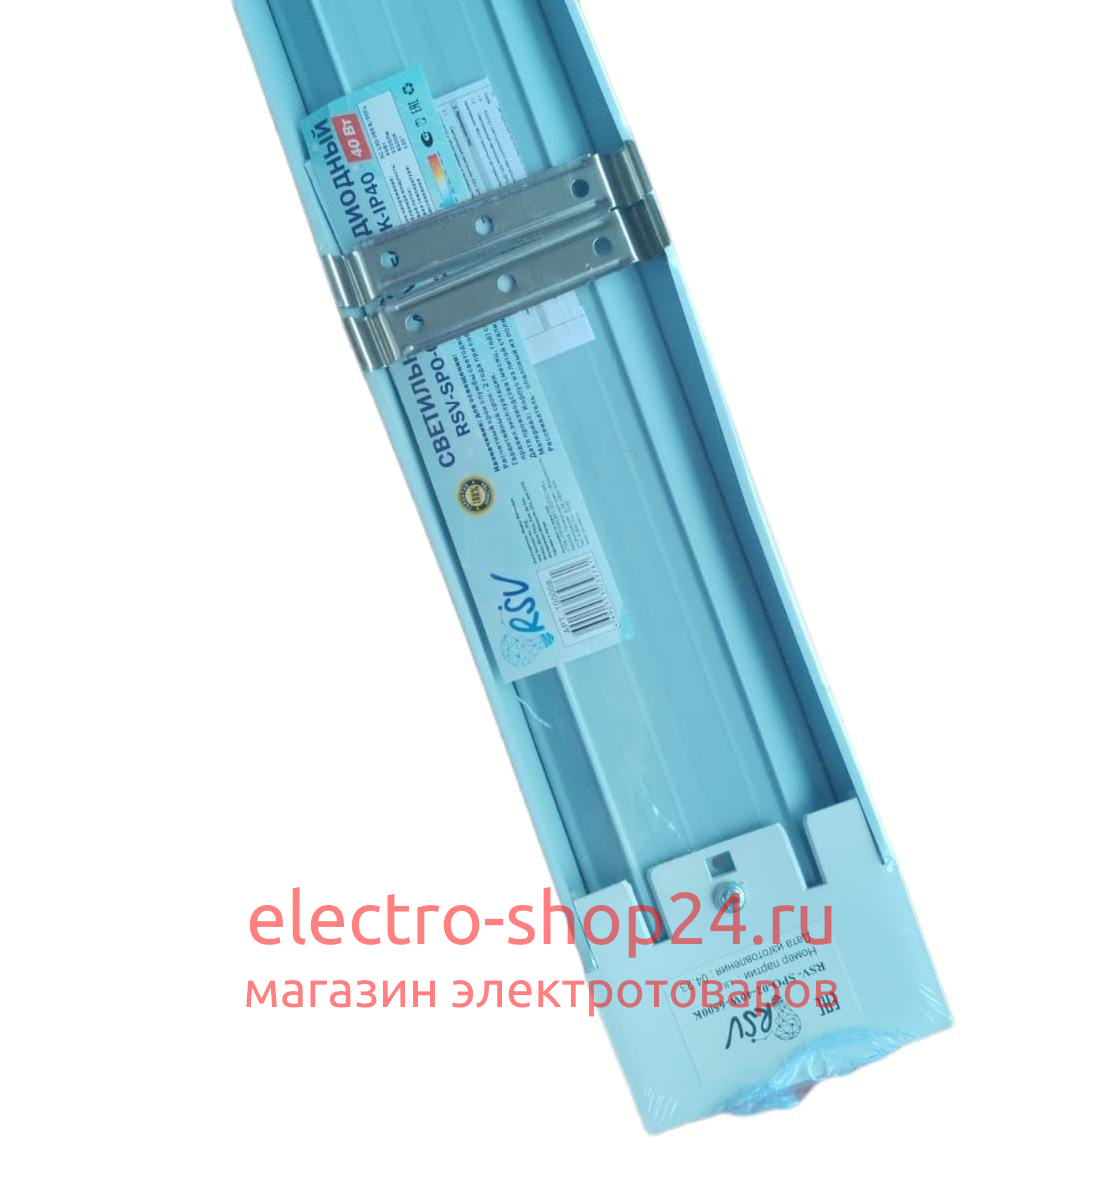 Светодиодный светильник RSV-SPO-02-40W-3000K-IP40 1200mm 100144 100144 - магазин электротехники Electroshop